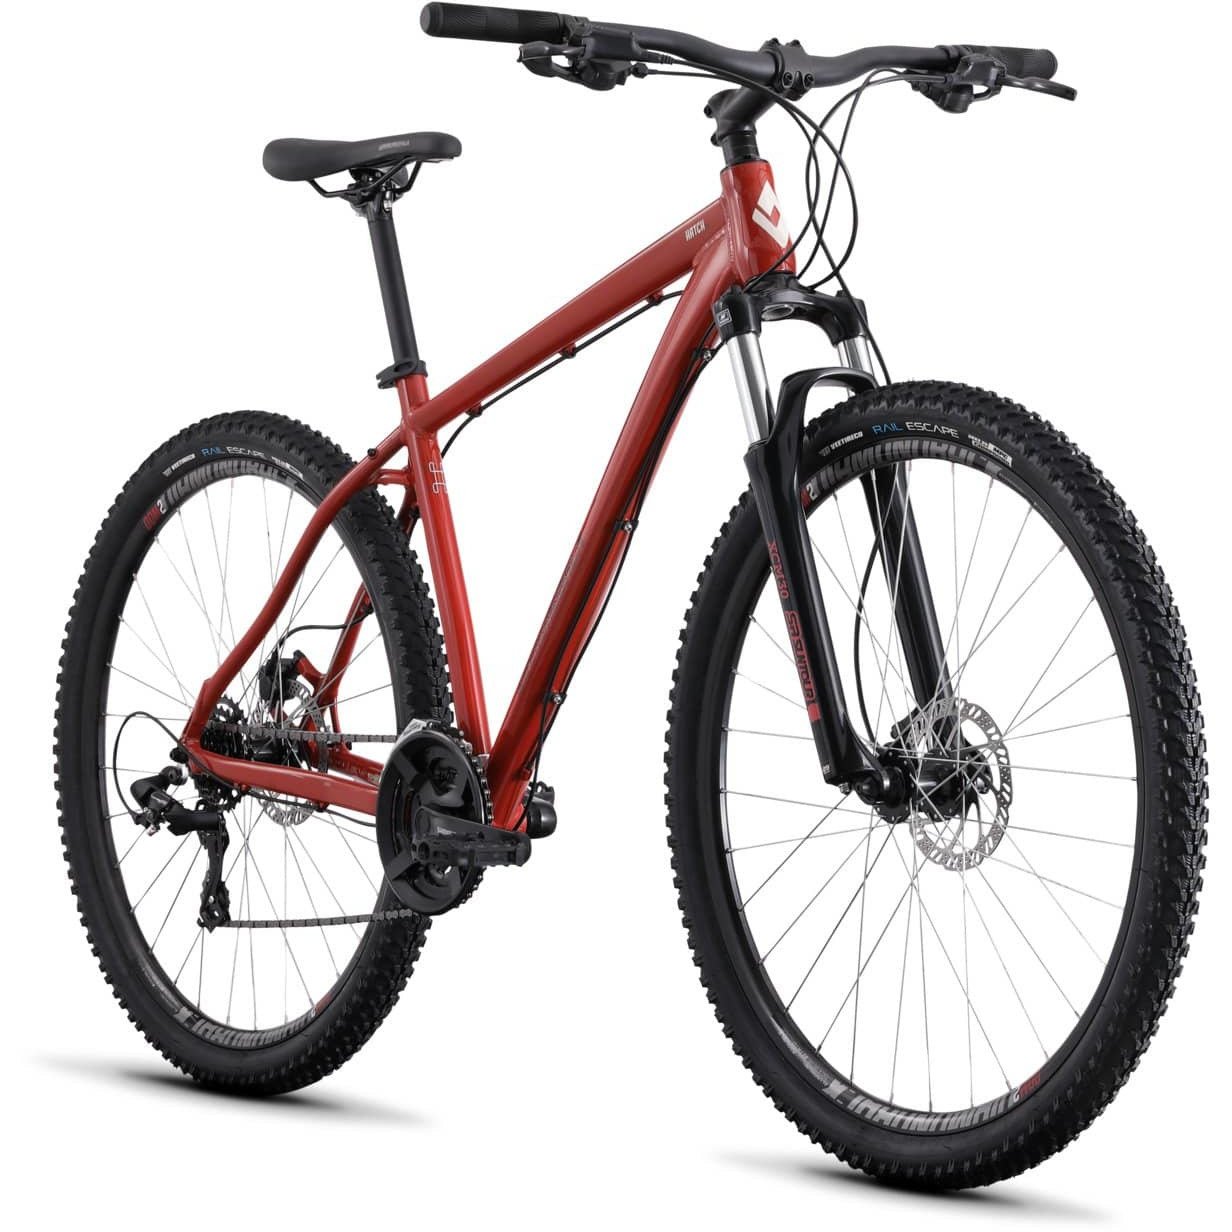 Diamondback Hatch 3 27.5" Mountain Bike (2021)